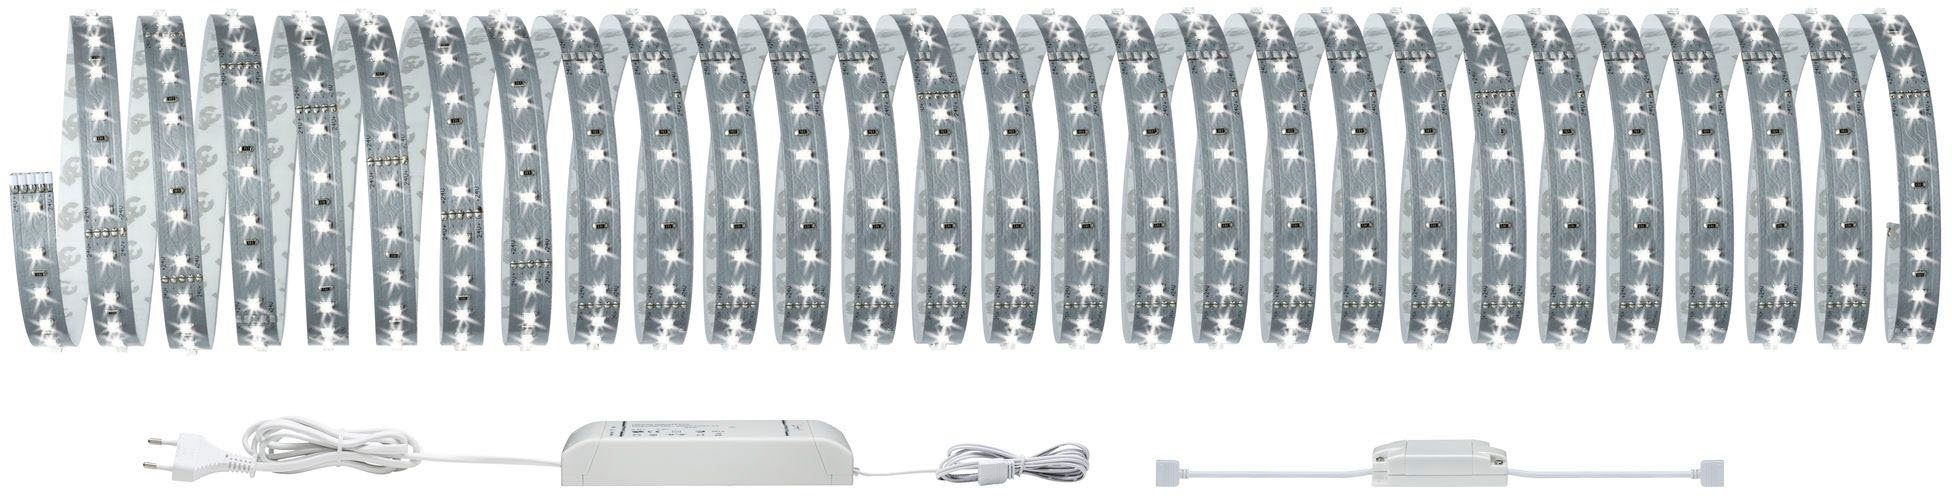 Paulmann LED-Streifen MaxLED 50W 550lm/m 10m 500 1-flammig, Basisset Smart 6500K, Tageslichtweiß Basisset Home